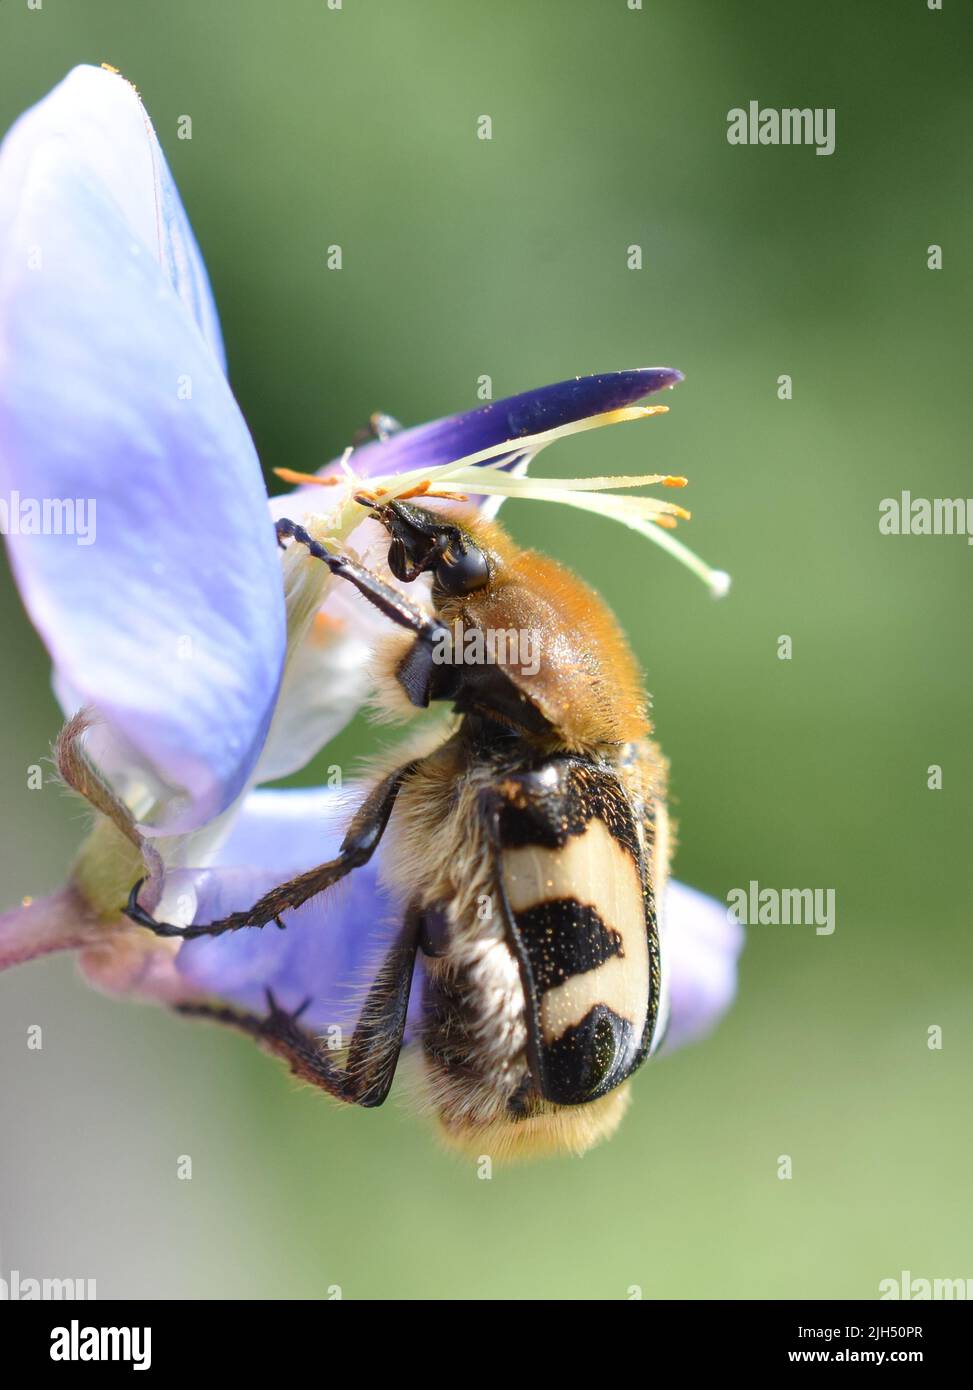 El escarabajo de la abeja Trichius fasciatus comiendo polen en una flor azul Foto de stock